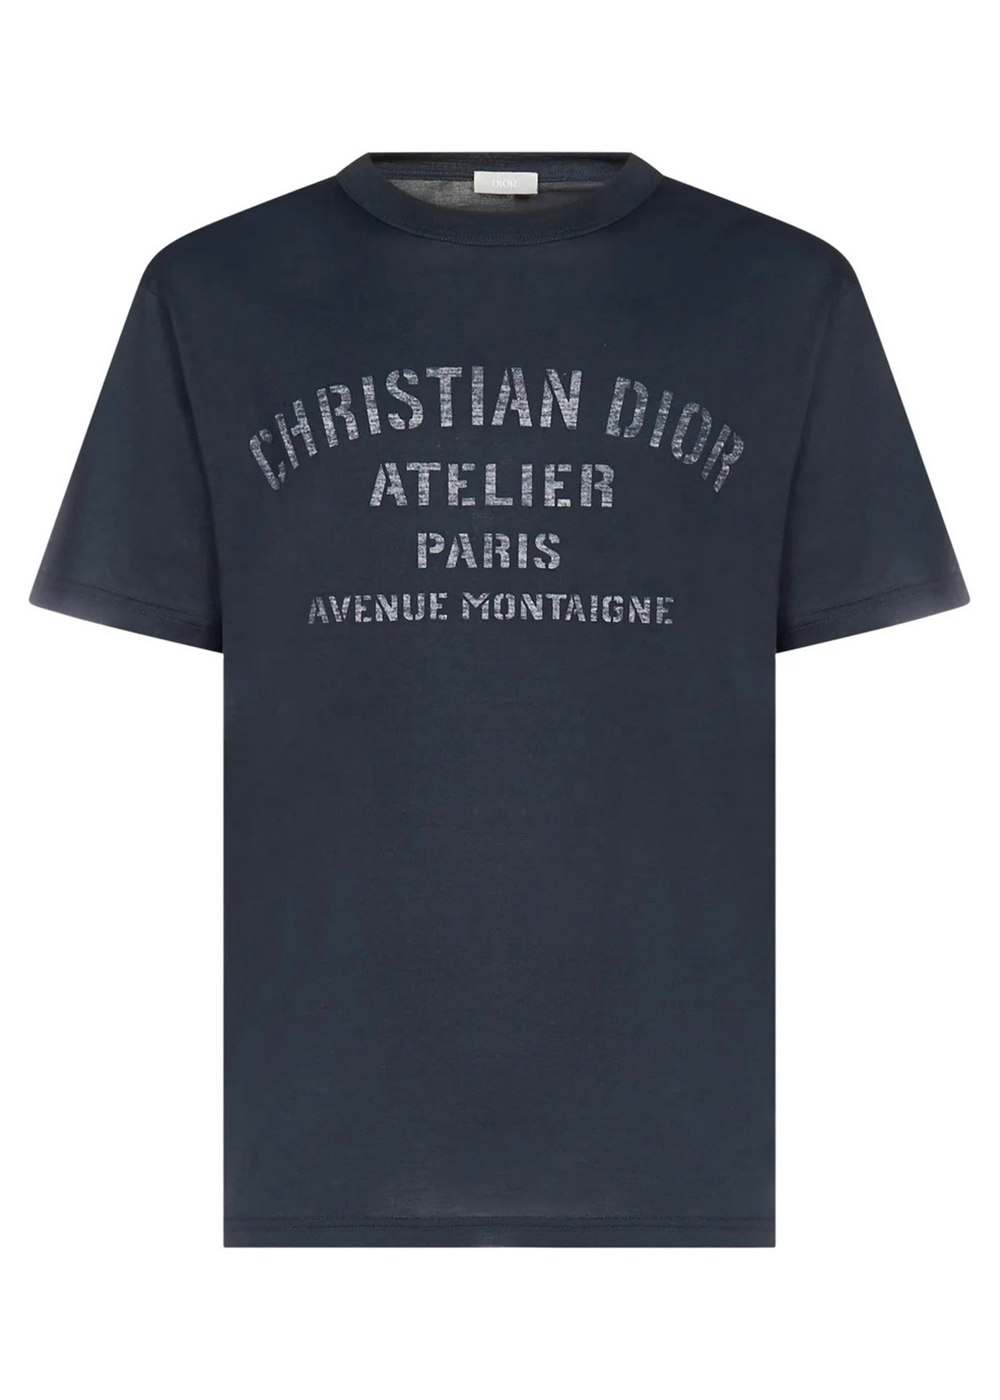 Dior T Shirt  Etsy